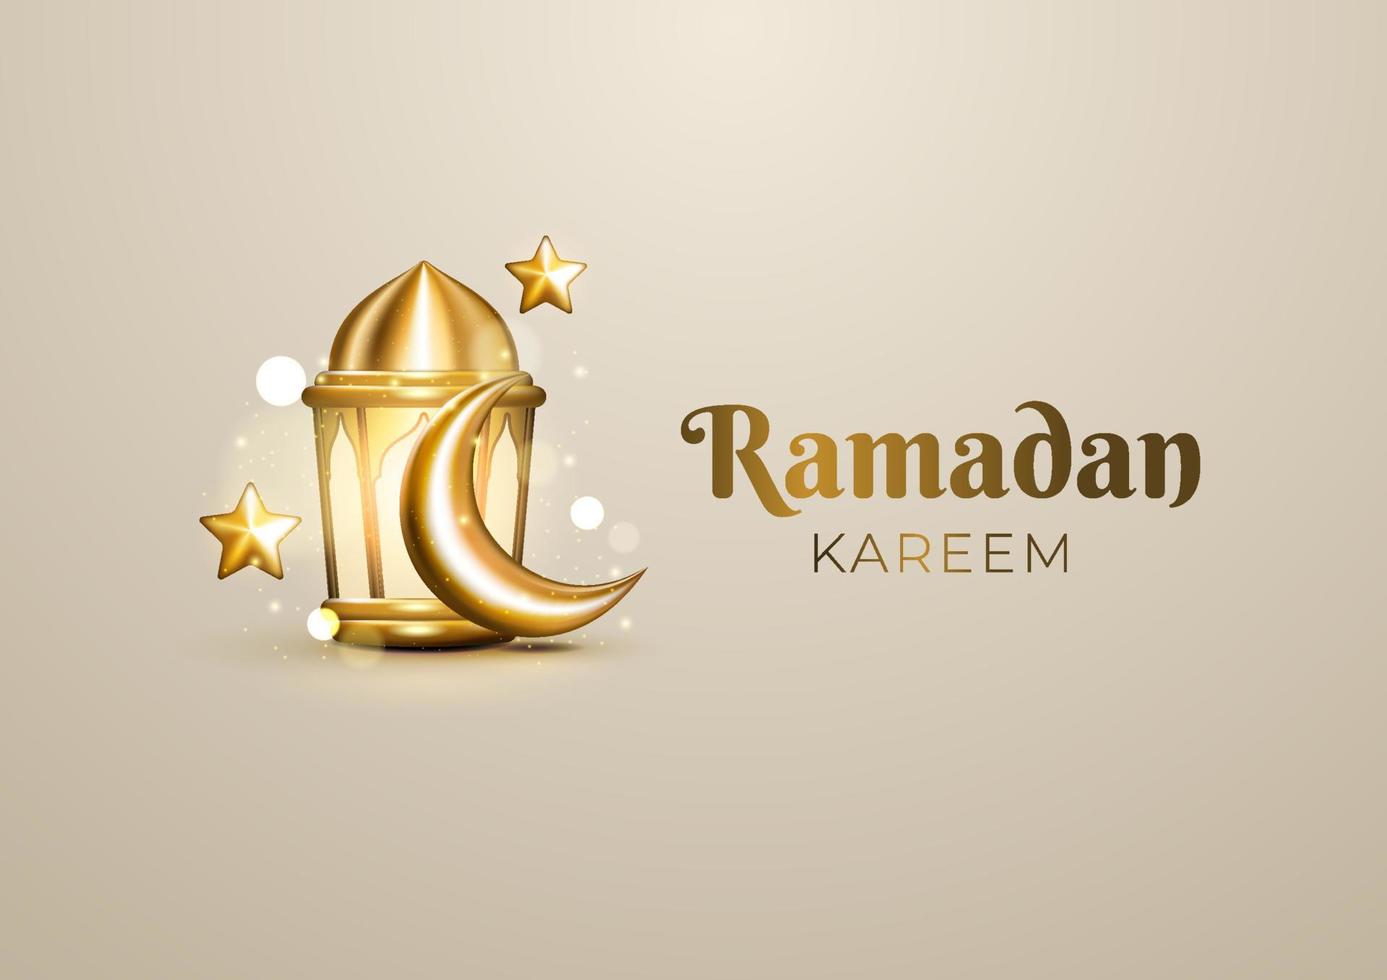 saudações islâmicas realistas do ramadã com crescente dourado, estrela e lanterna árabe. fundo de luxo ramadan kareem vetor